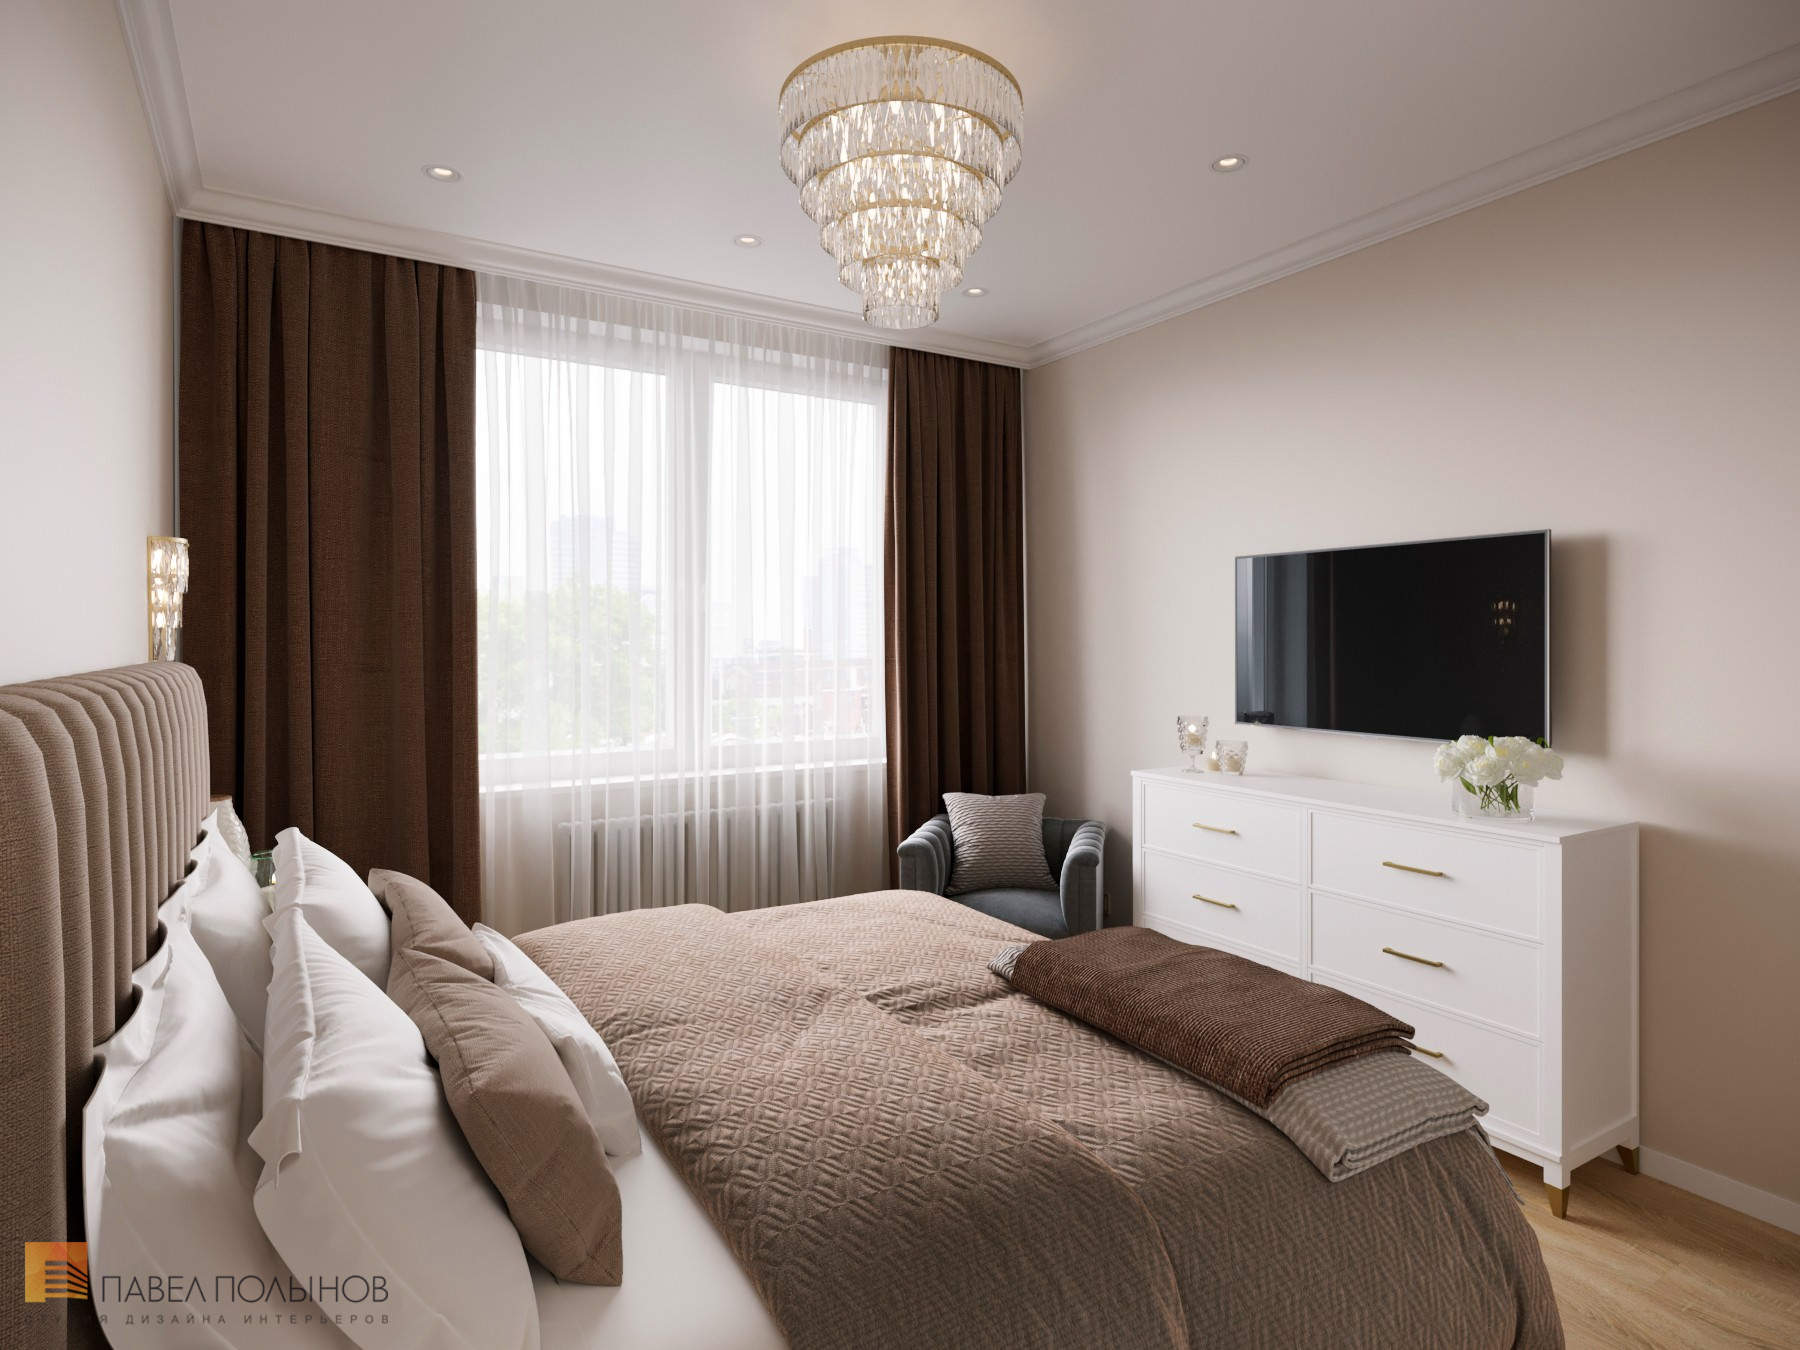 Фото дизайн спальни из проекта «Интерьер квартиры в стиле неоклассики, ЖК «Пресня Сити», 46 кв.м.»